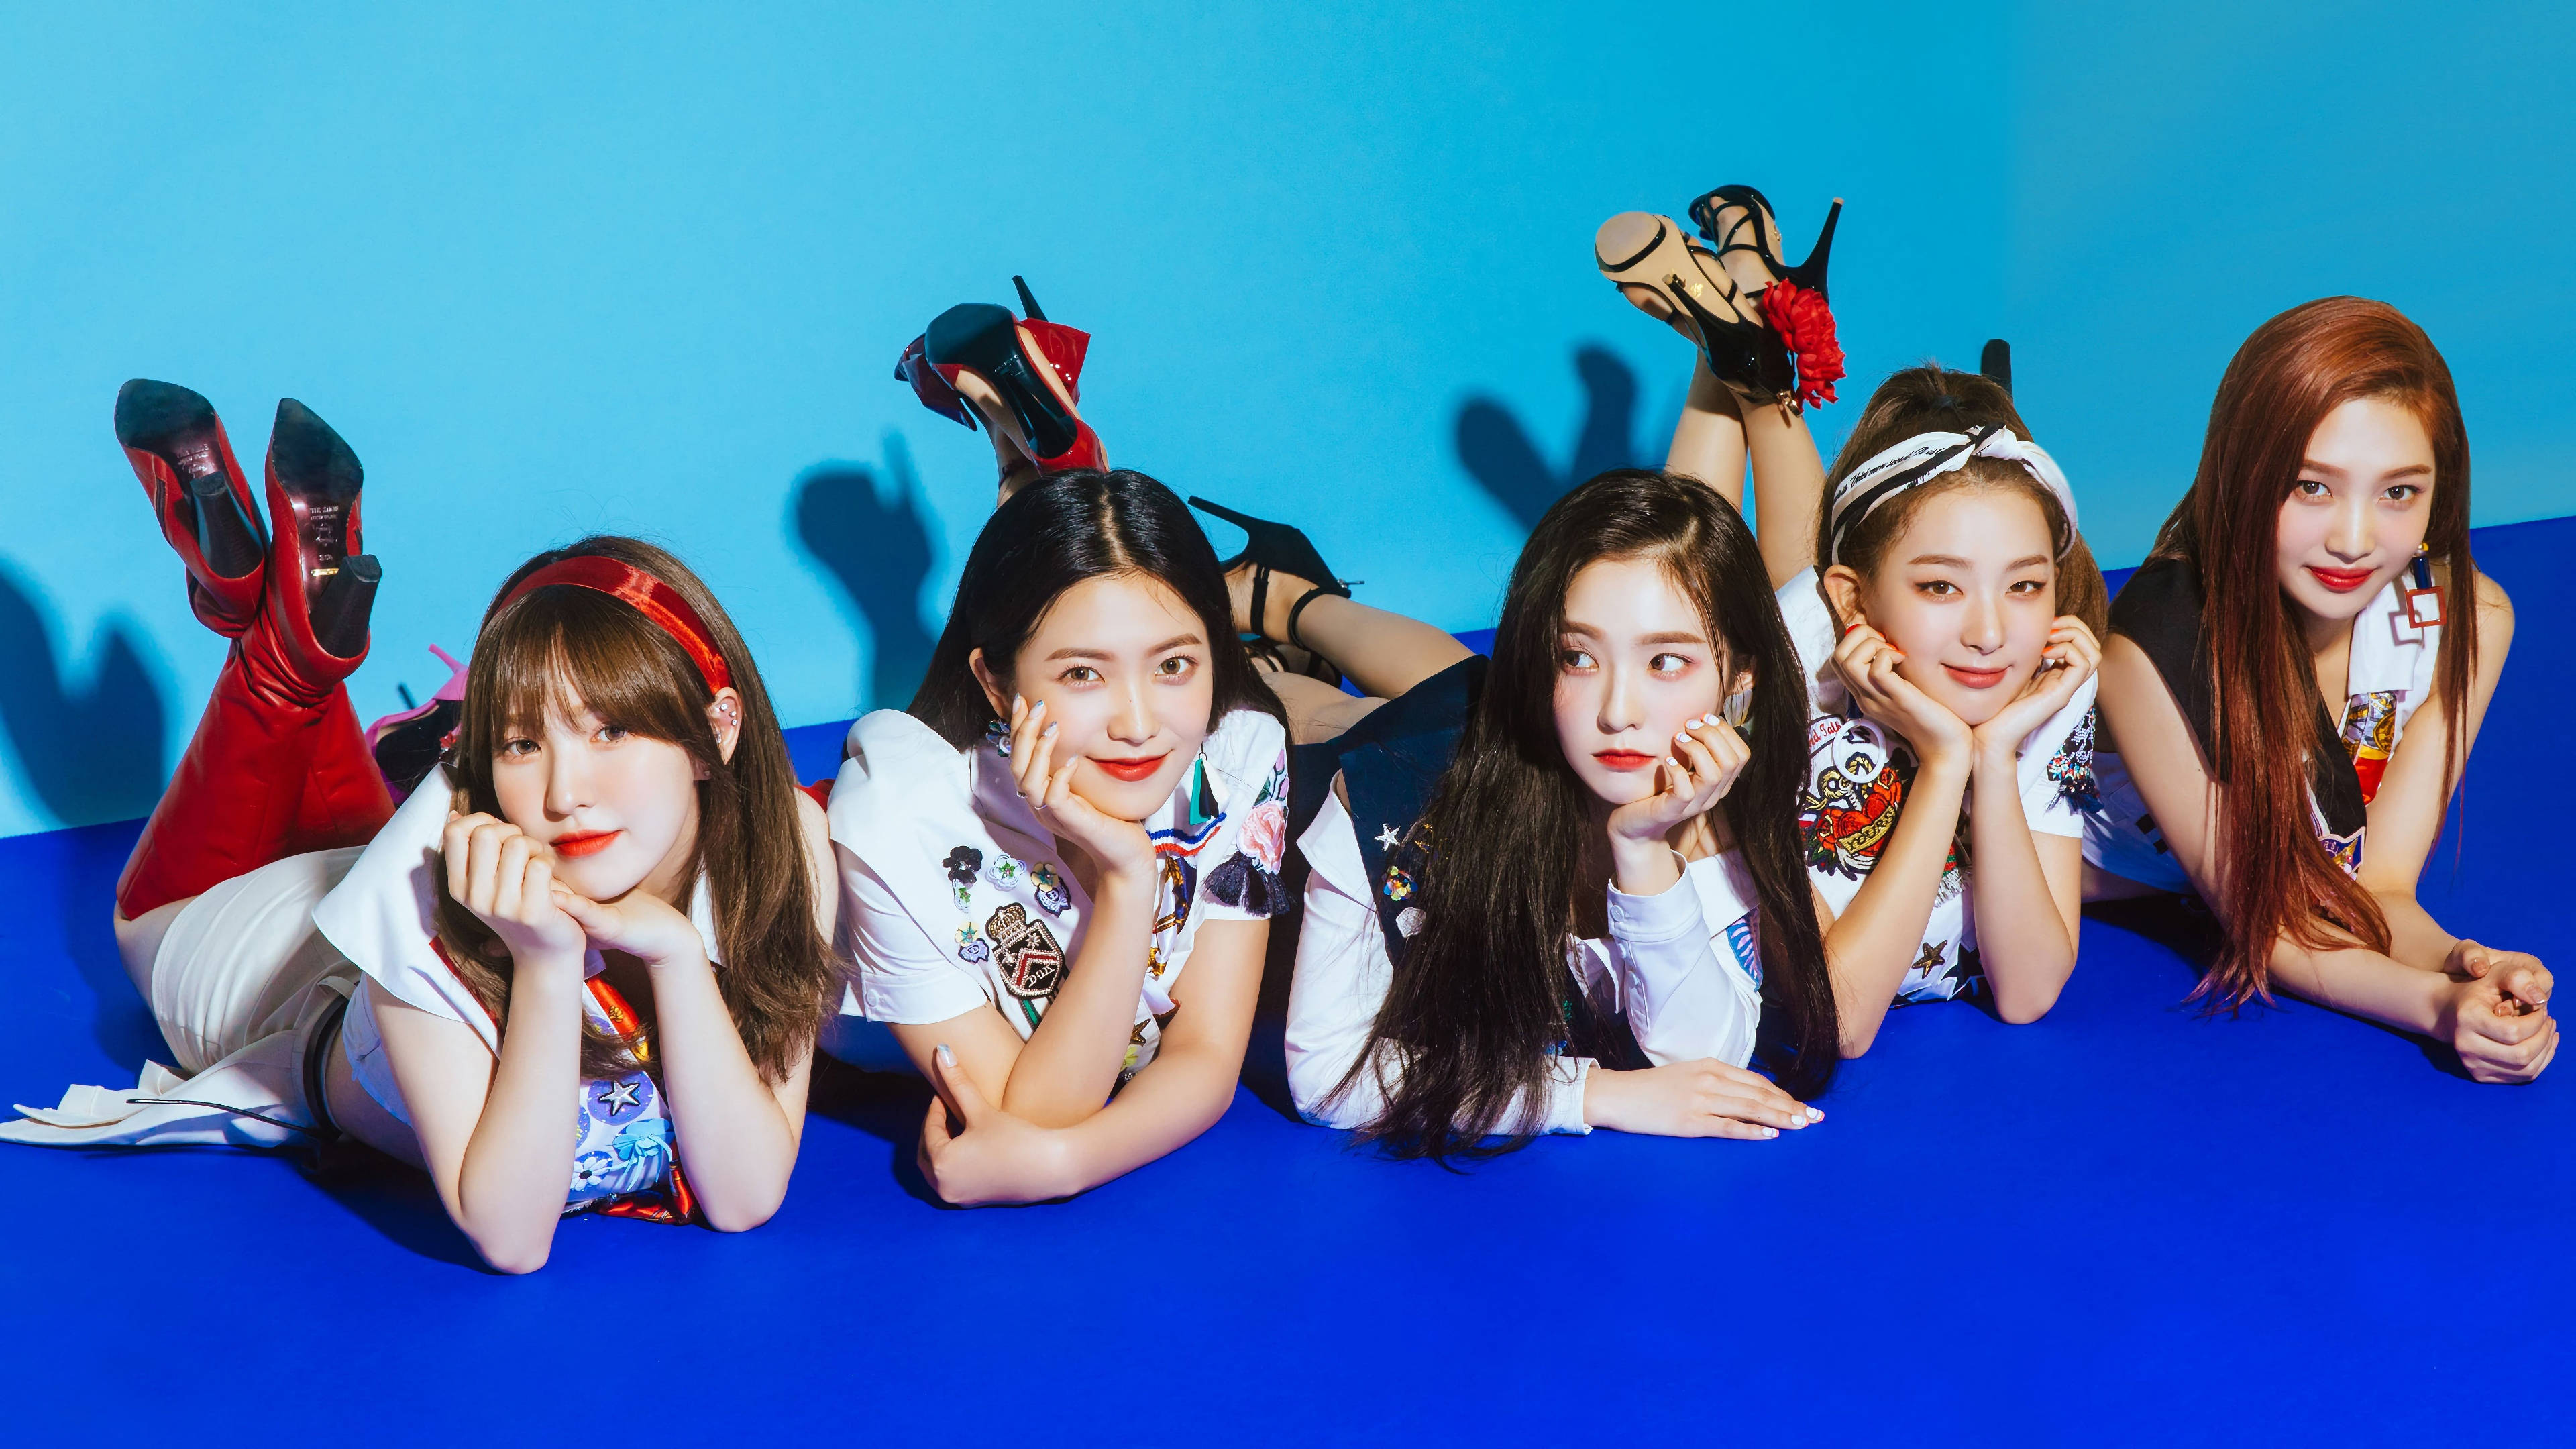 Download Red Velvet K Pop Group Wallpaper